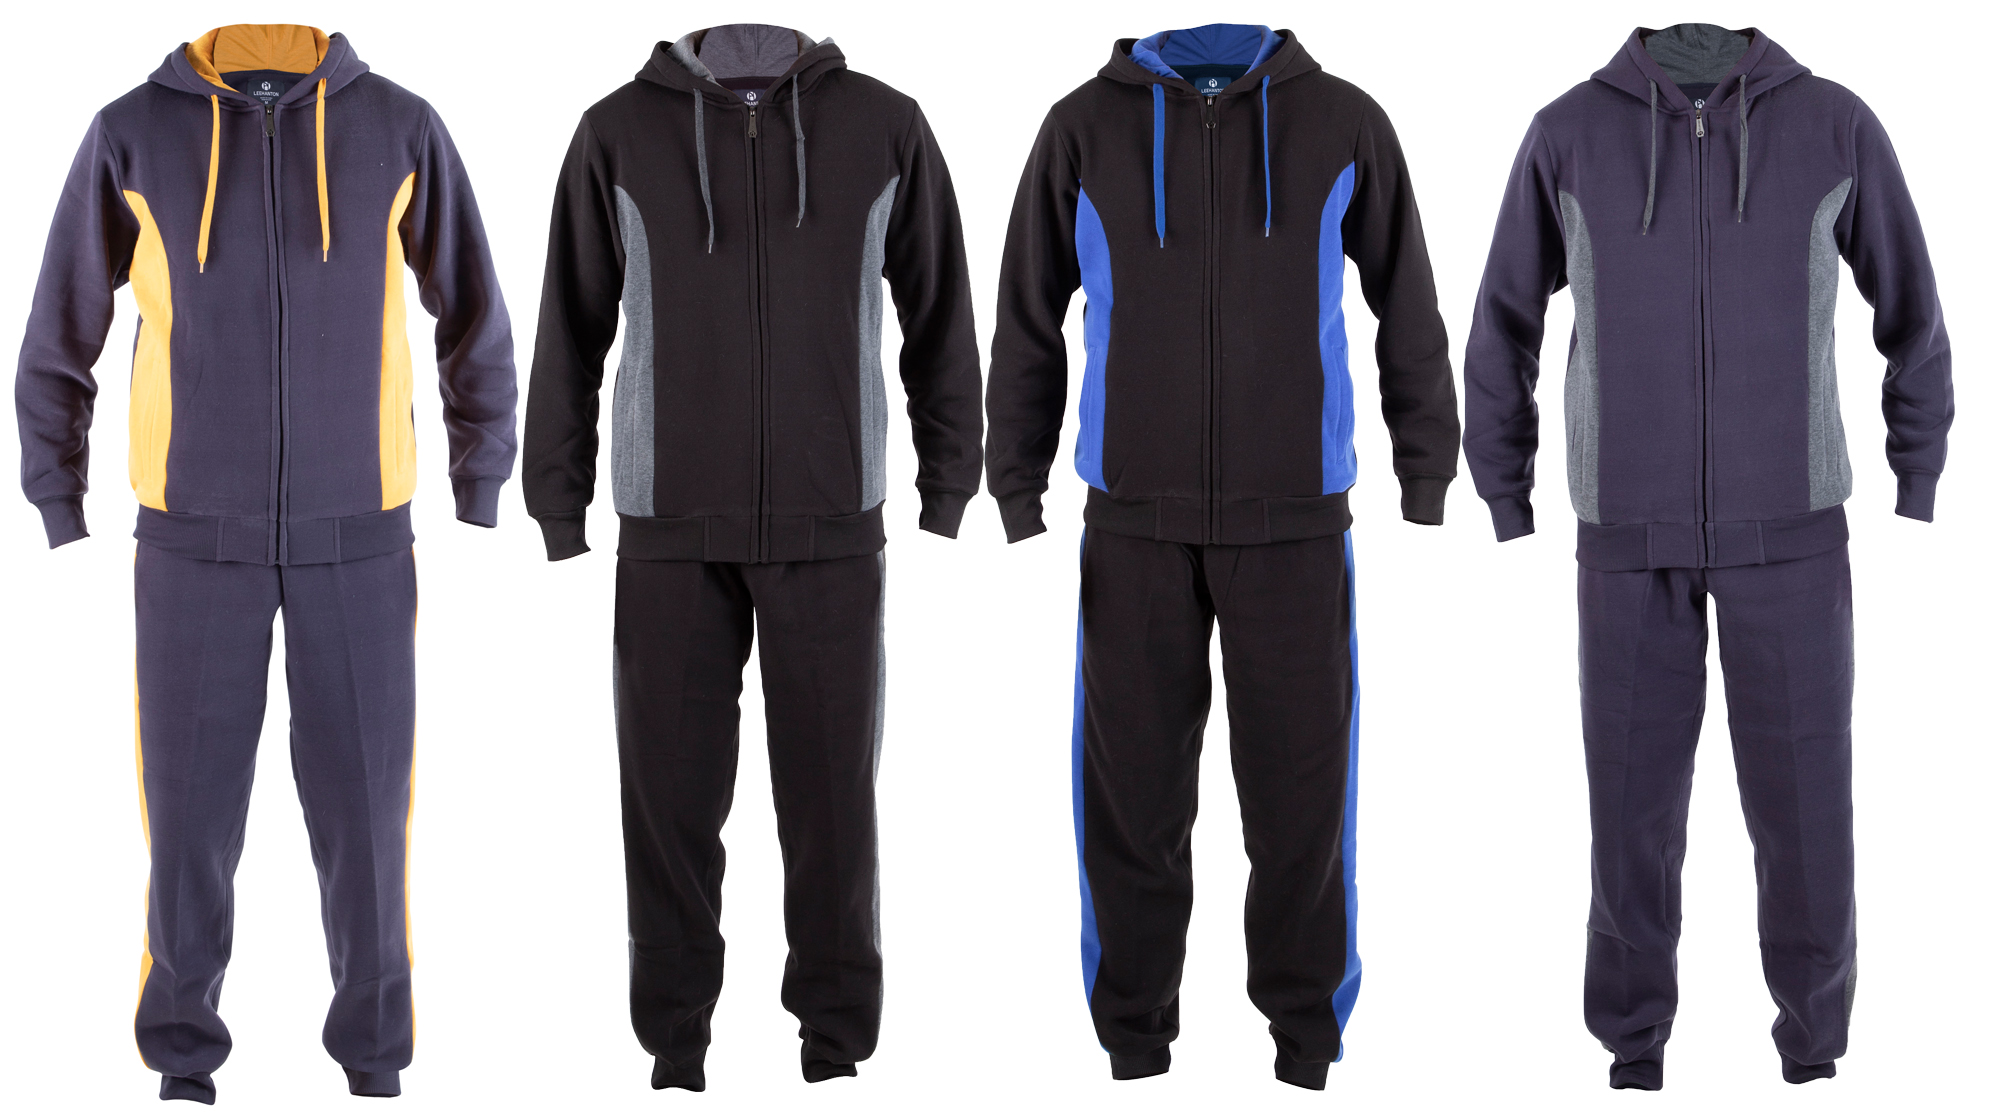 Men's 2-Piece Fleece Lined Sweatshirt & Sweatpants Sets w/ Two Tone Side Stripes - Choose Your Color